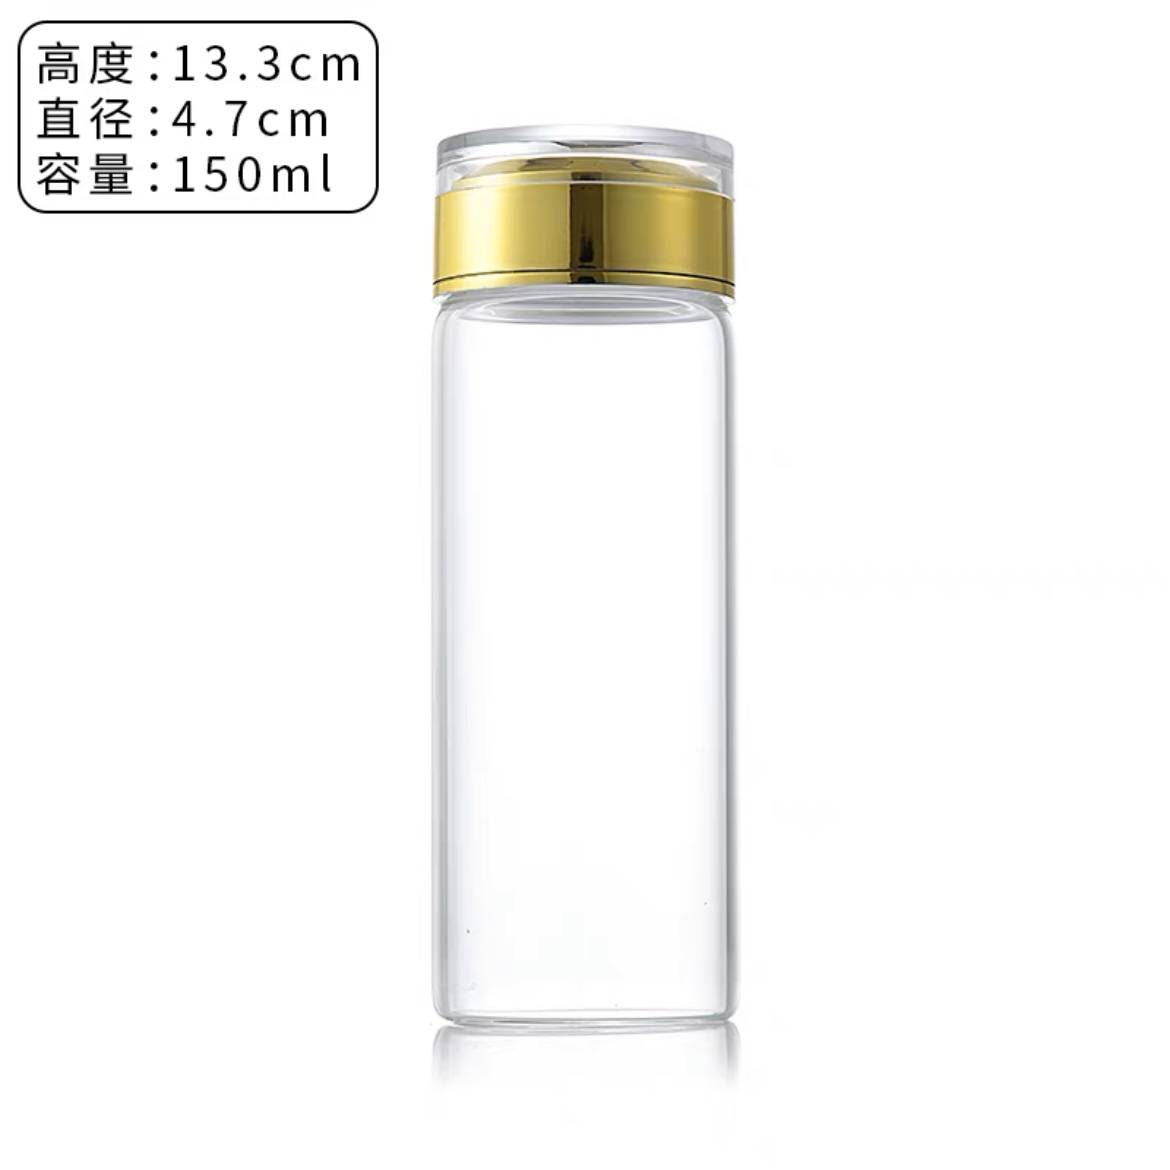 高品质高透手串核桃沉香瓶玻璃瓶玻璃罐密封罐防尘瓶盒养珠罐-图1